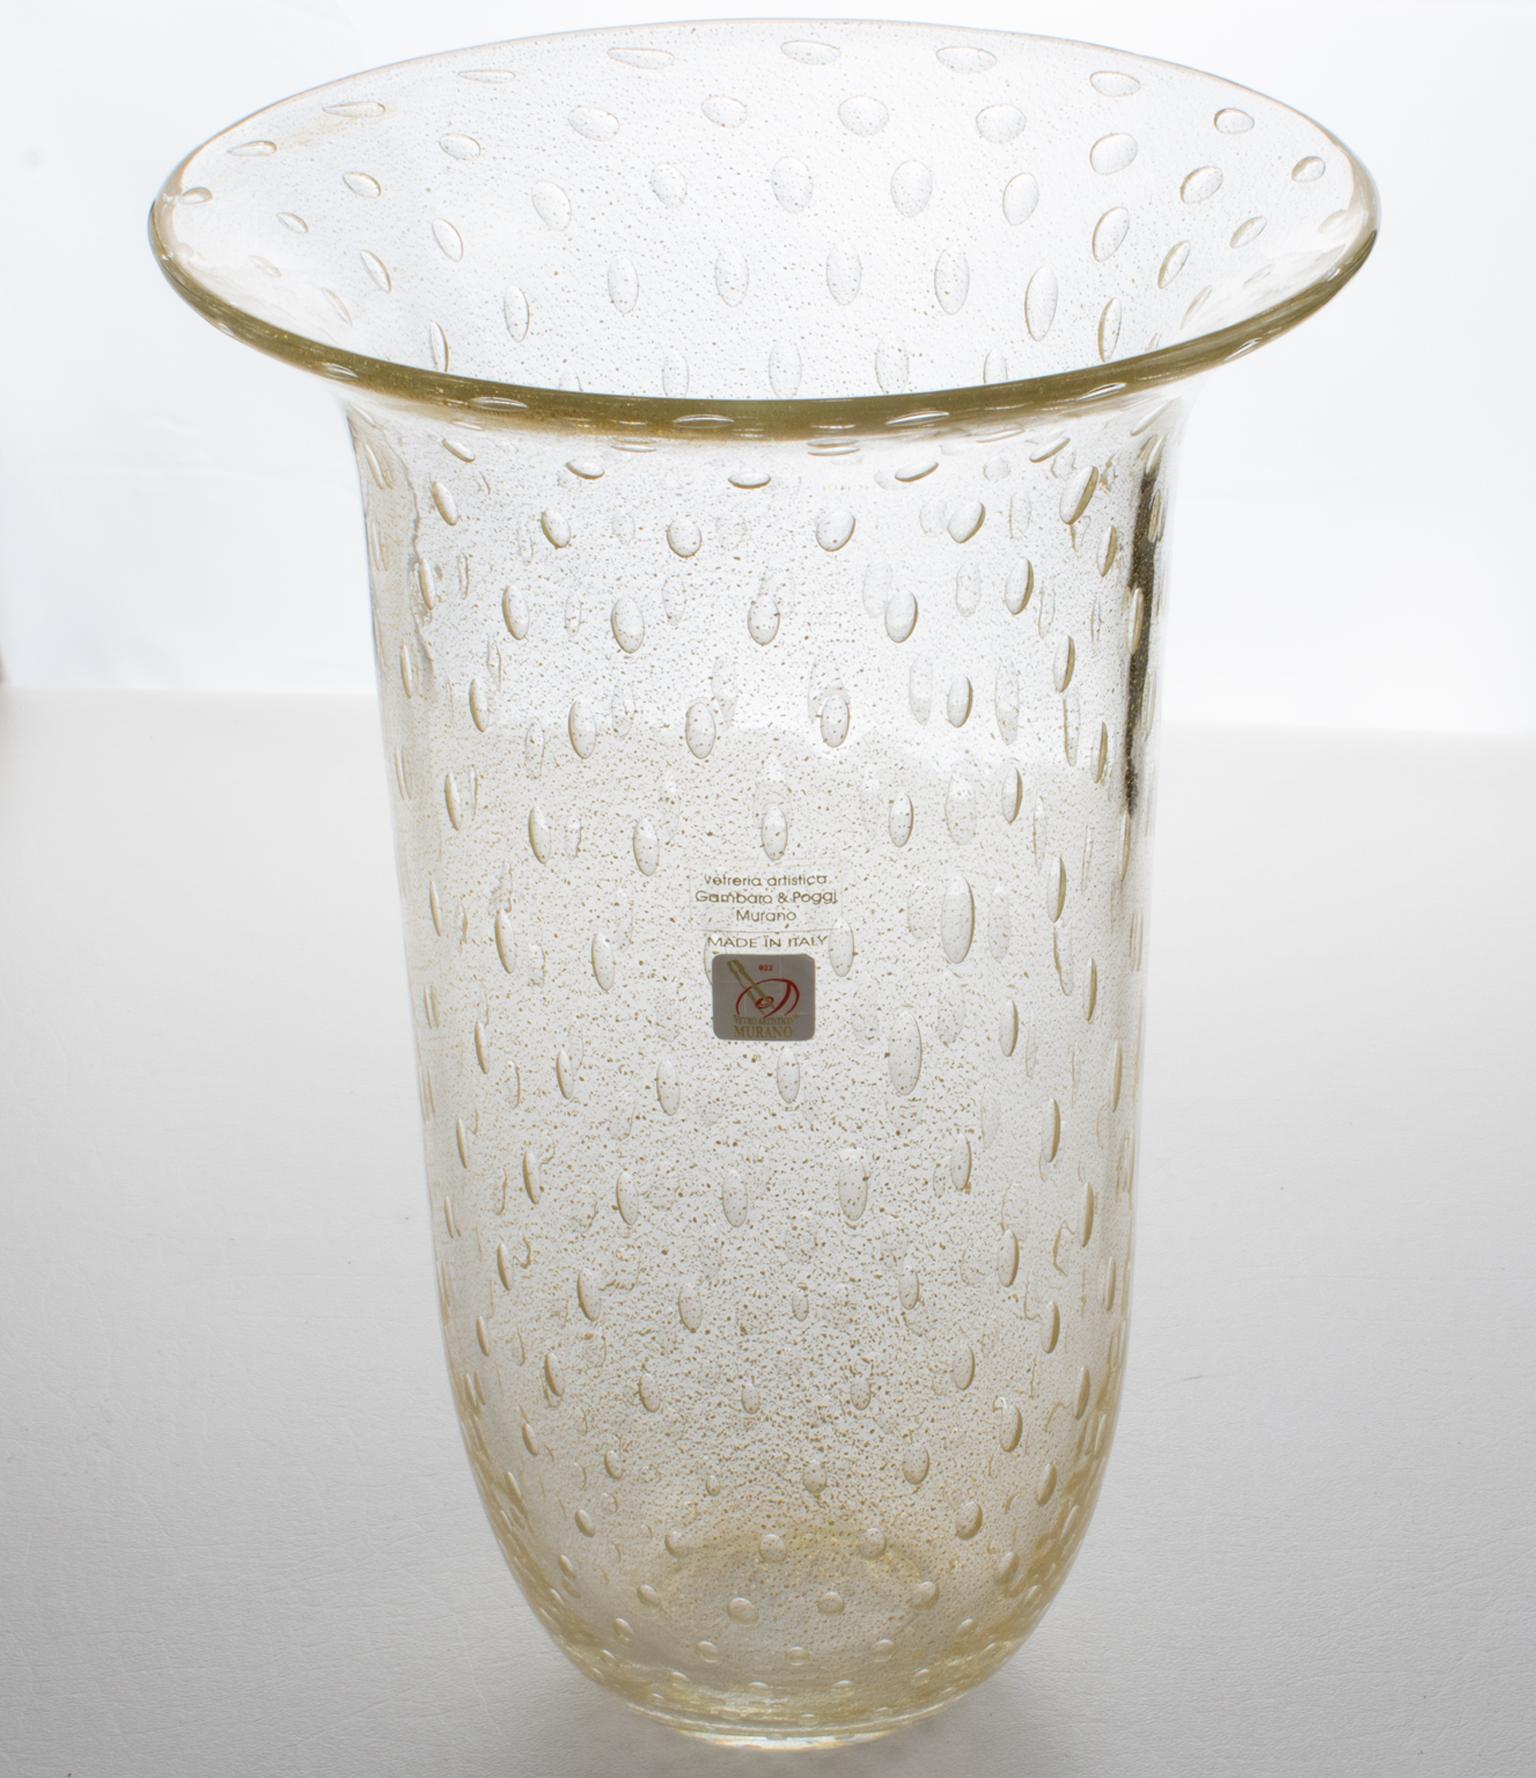 Gambaro & Poggi, Murano, hat diese schöne mundgeblasene Vase aus italienischem Kunstglas handgefertigt. Die hohe skulpturale Tulpenform hat Einschlüsse von Goldflocken und die 